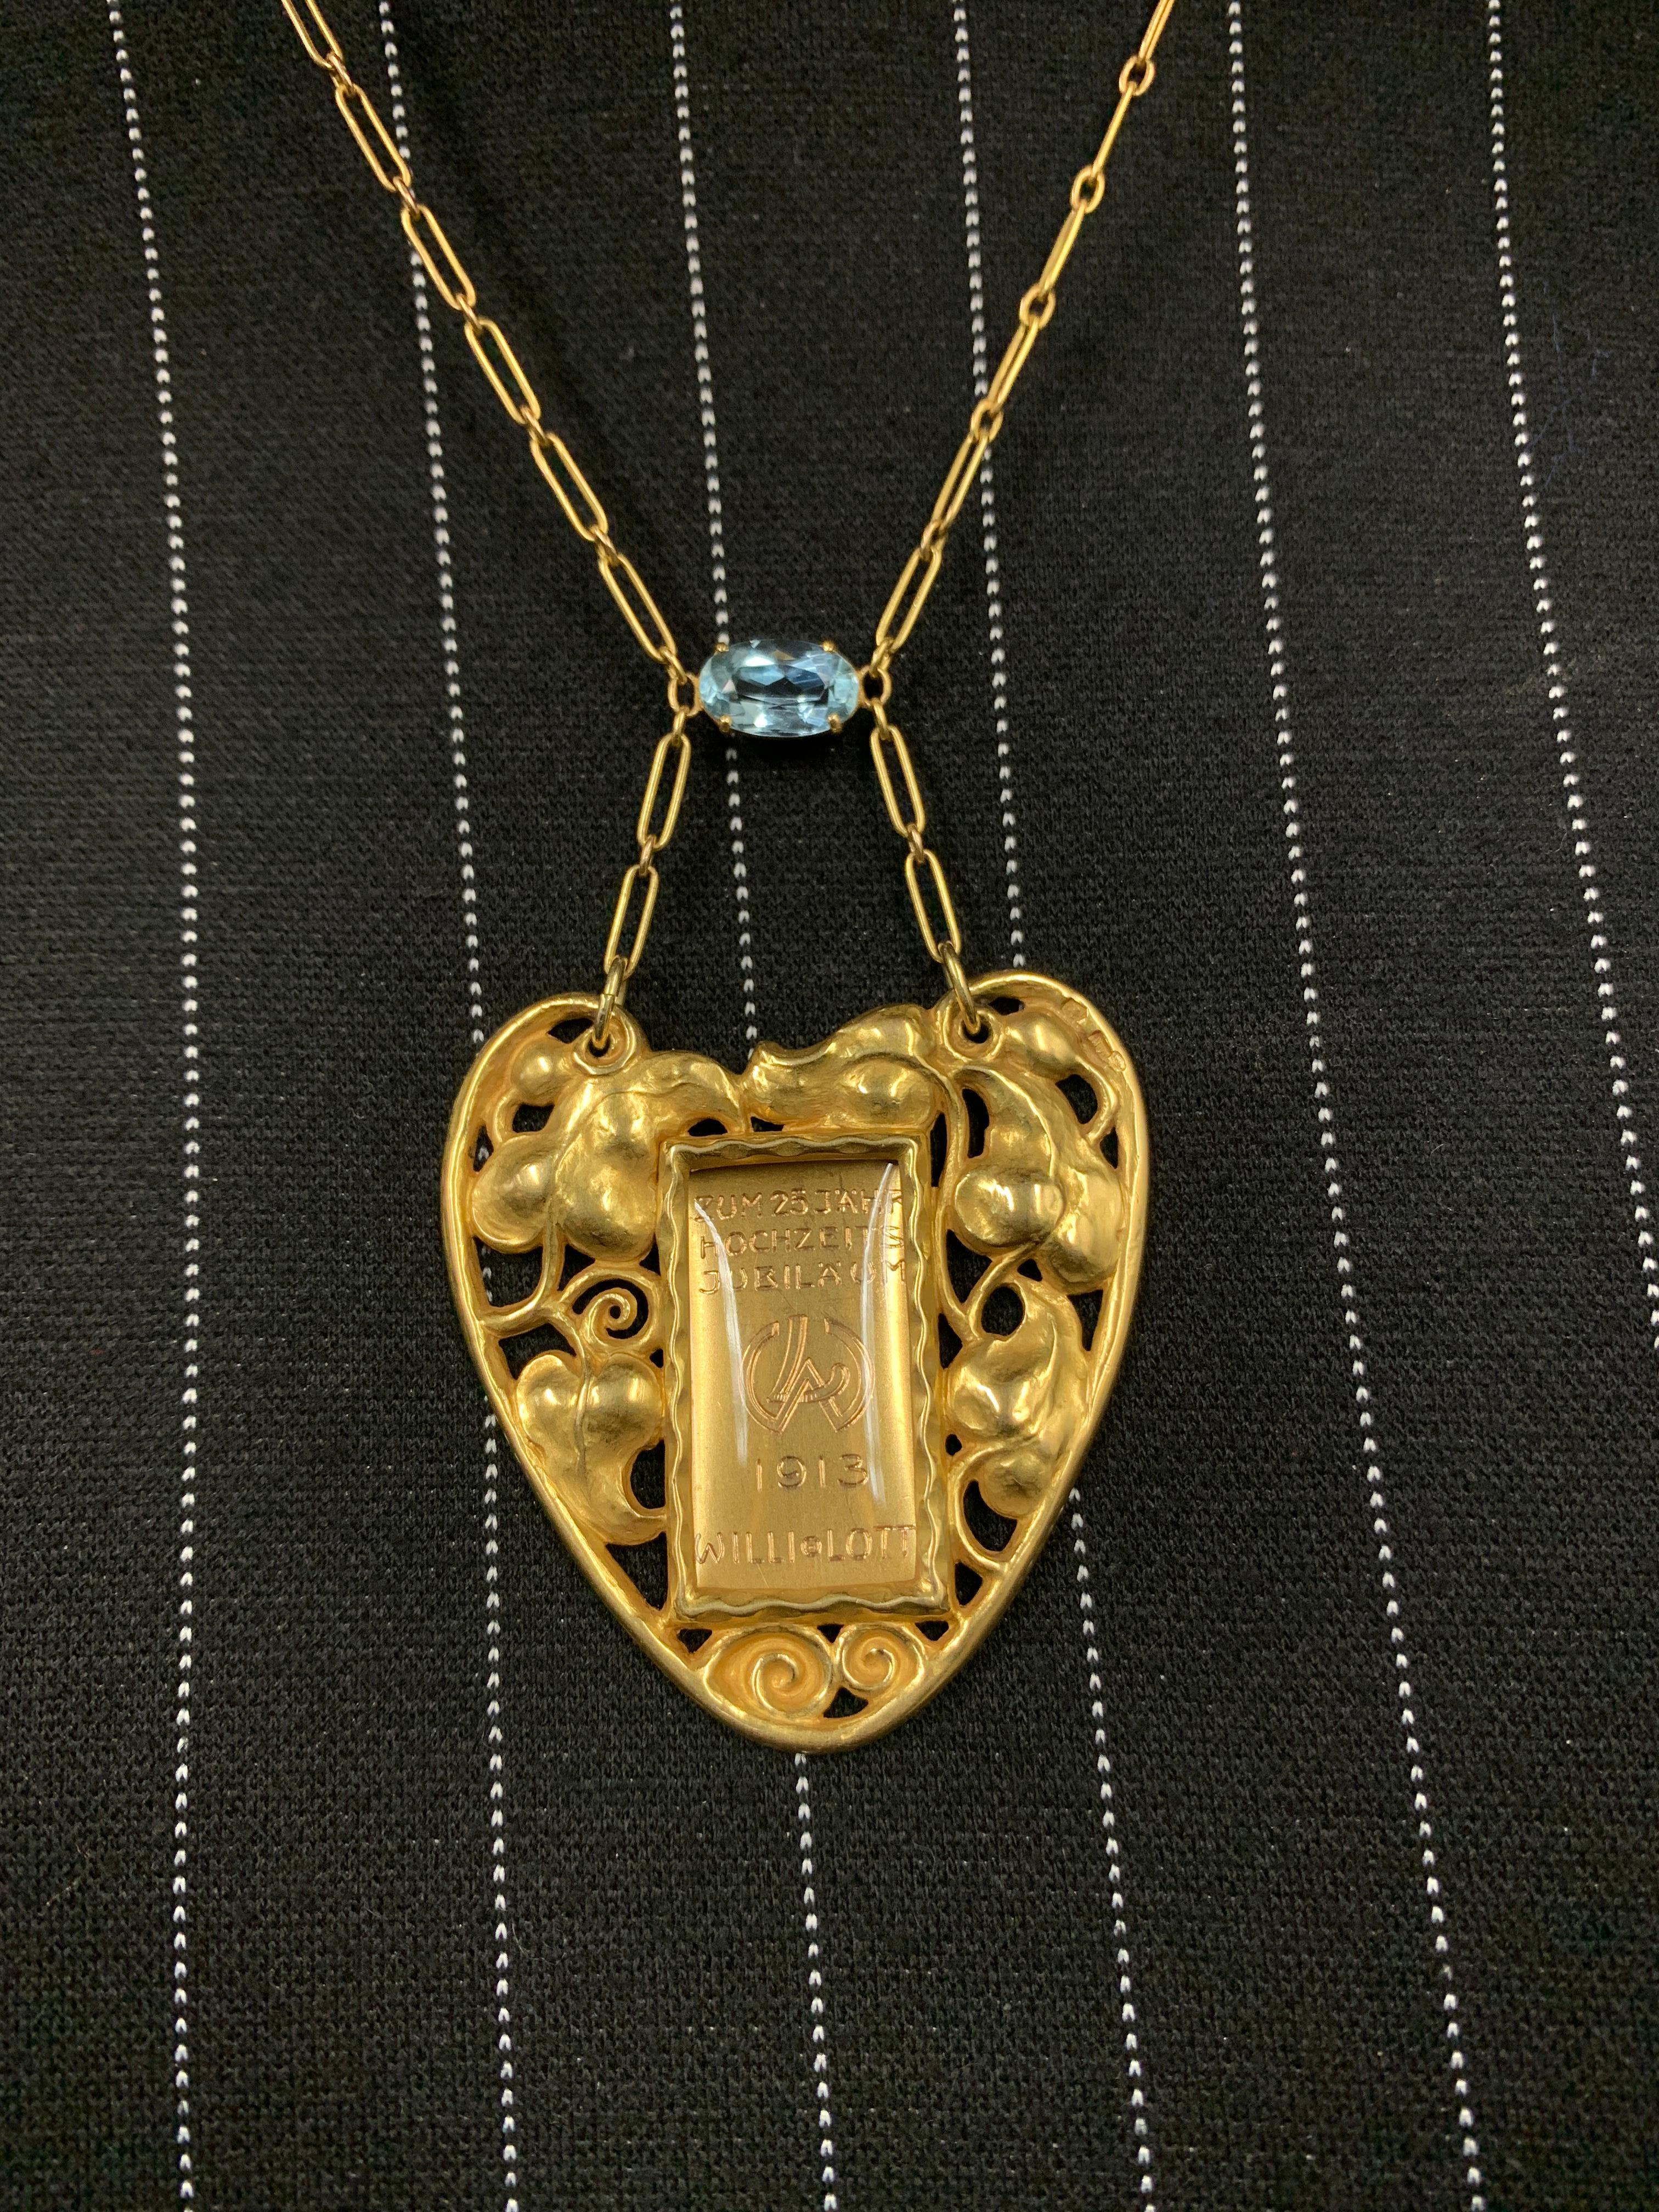 Oval Cut Art Nouveau Aquamarine Gold Pendant Picture Frame Necklace